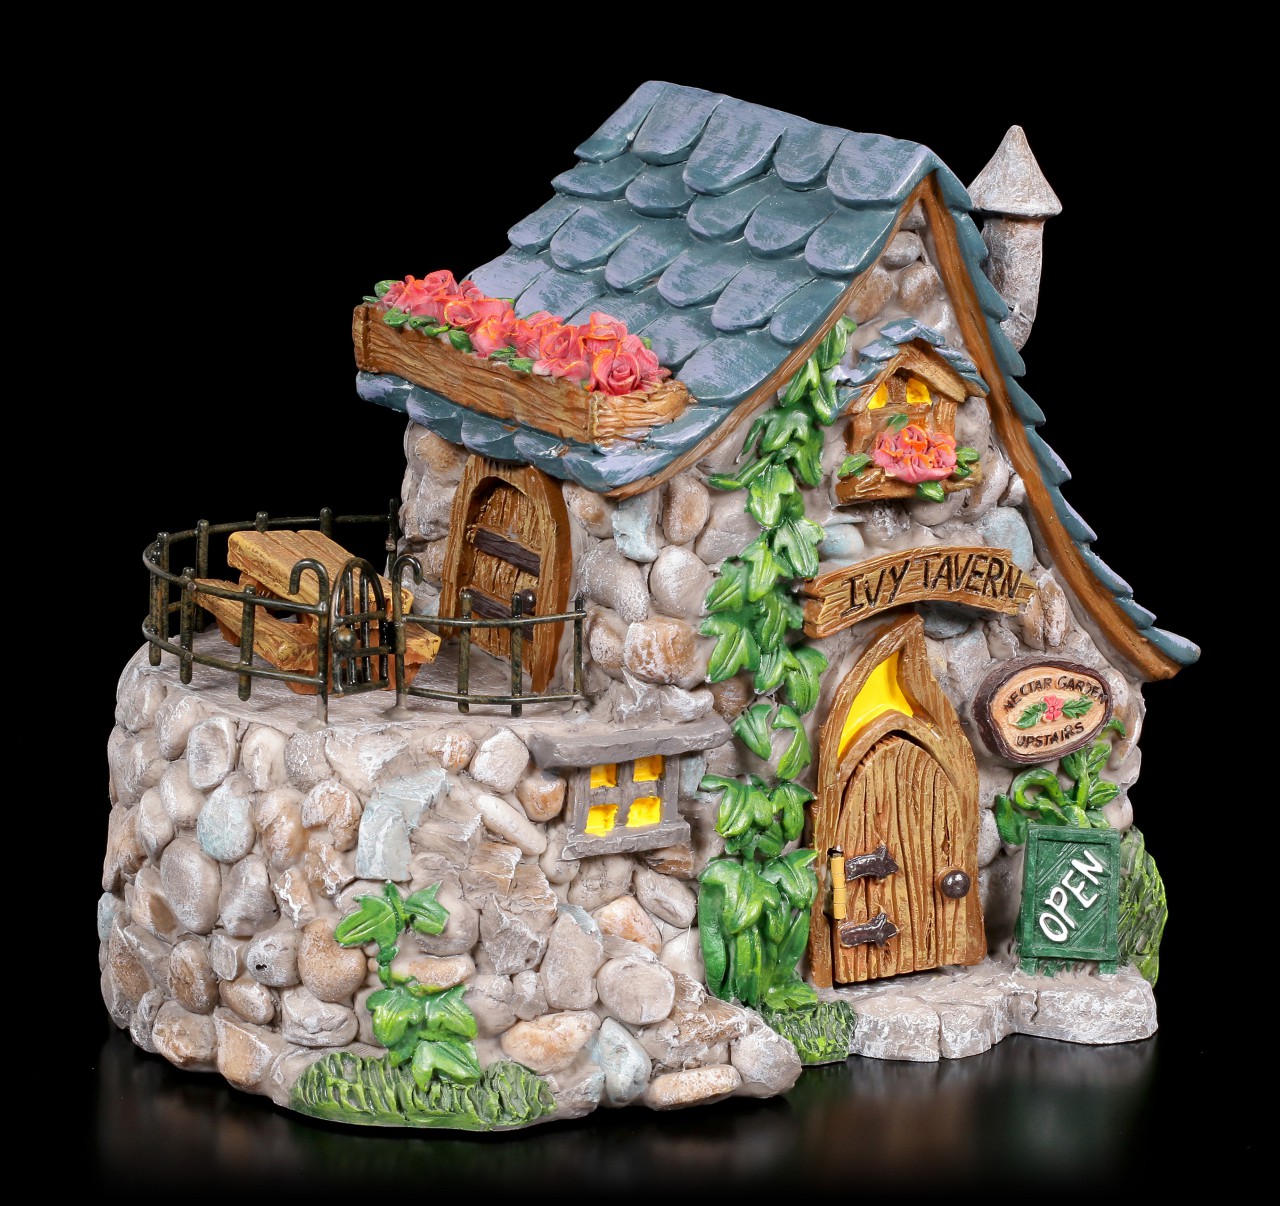 Fairy House - Ivy Tavern